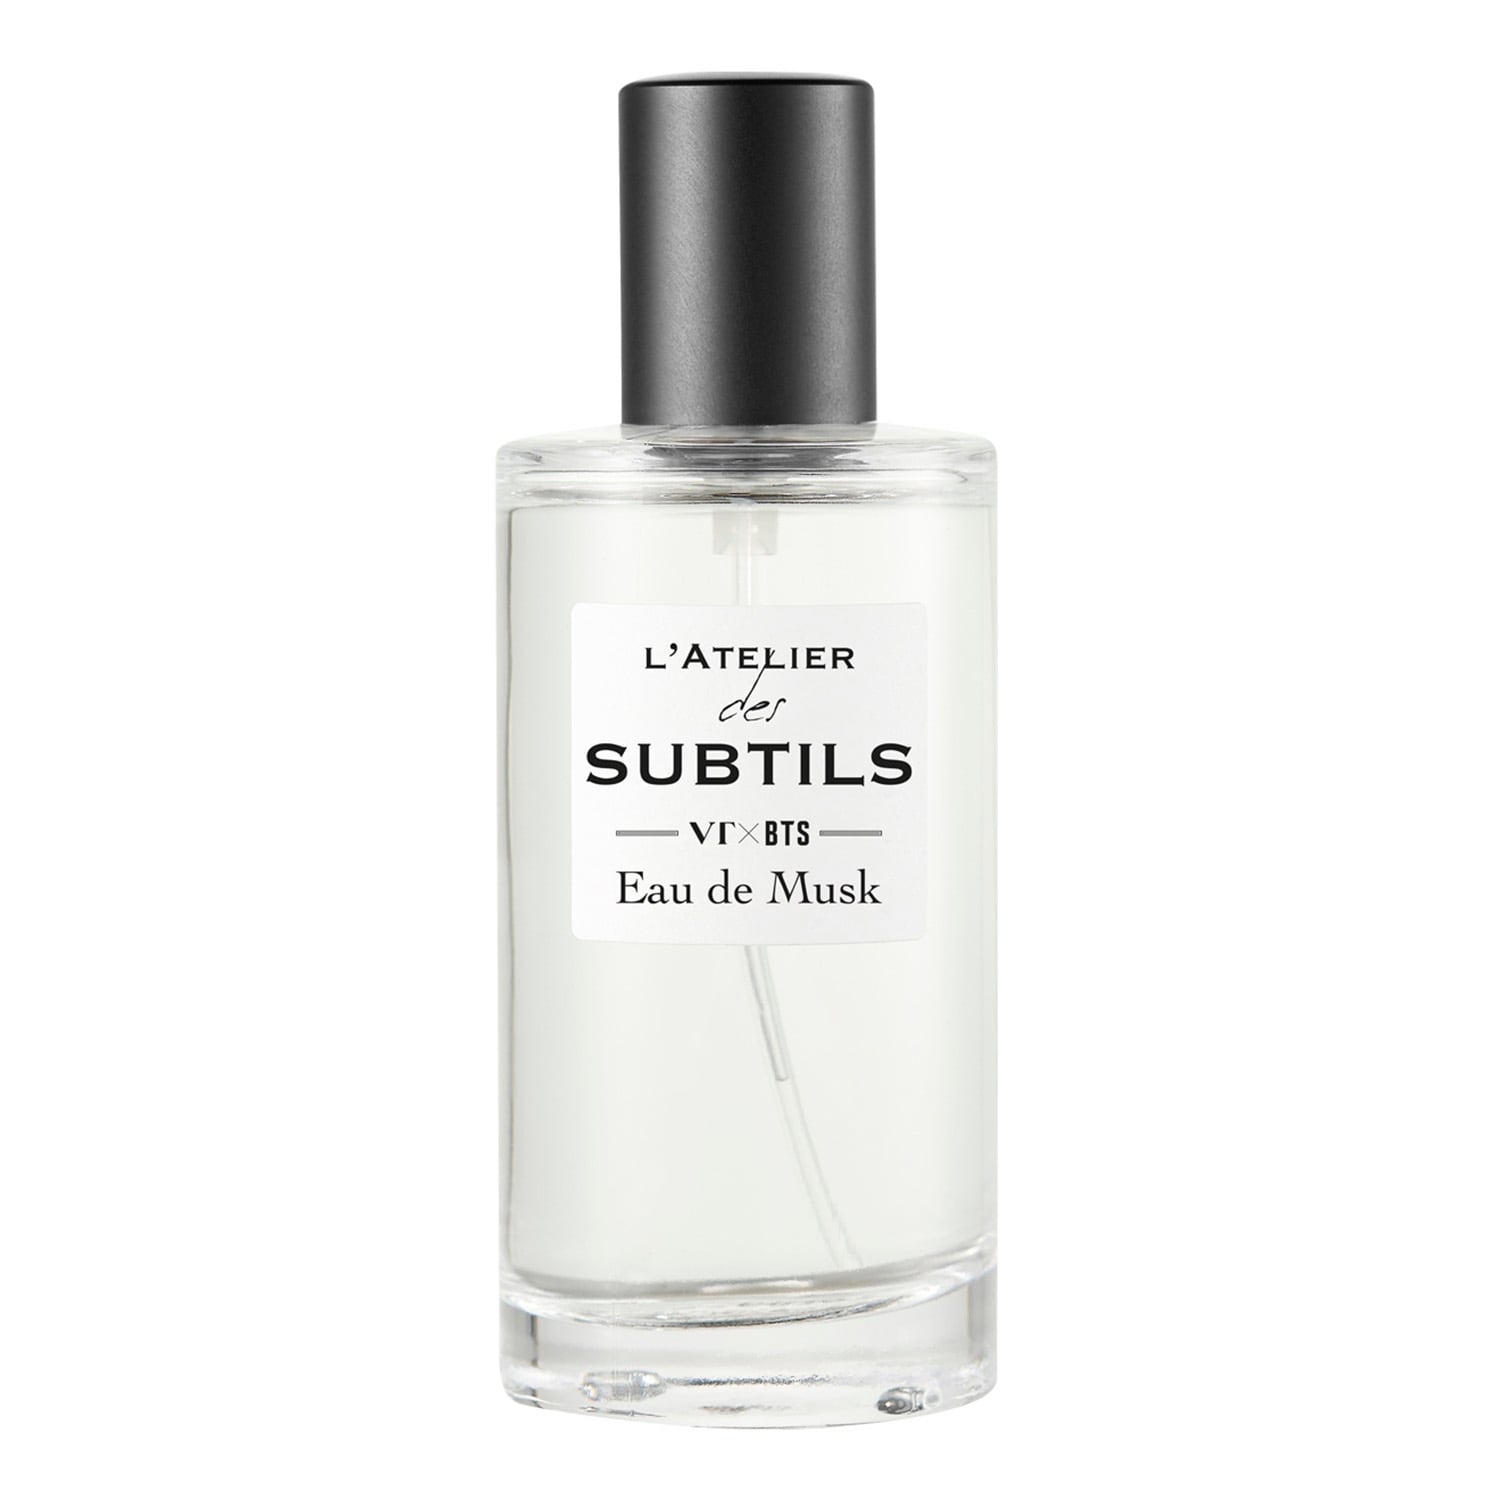 L'Atelier des Subtils Eau de Musk VTxBTS - una novità fragranza unisex 2019